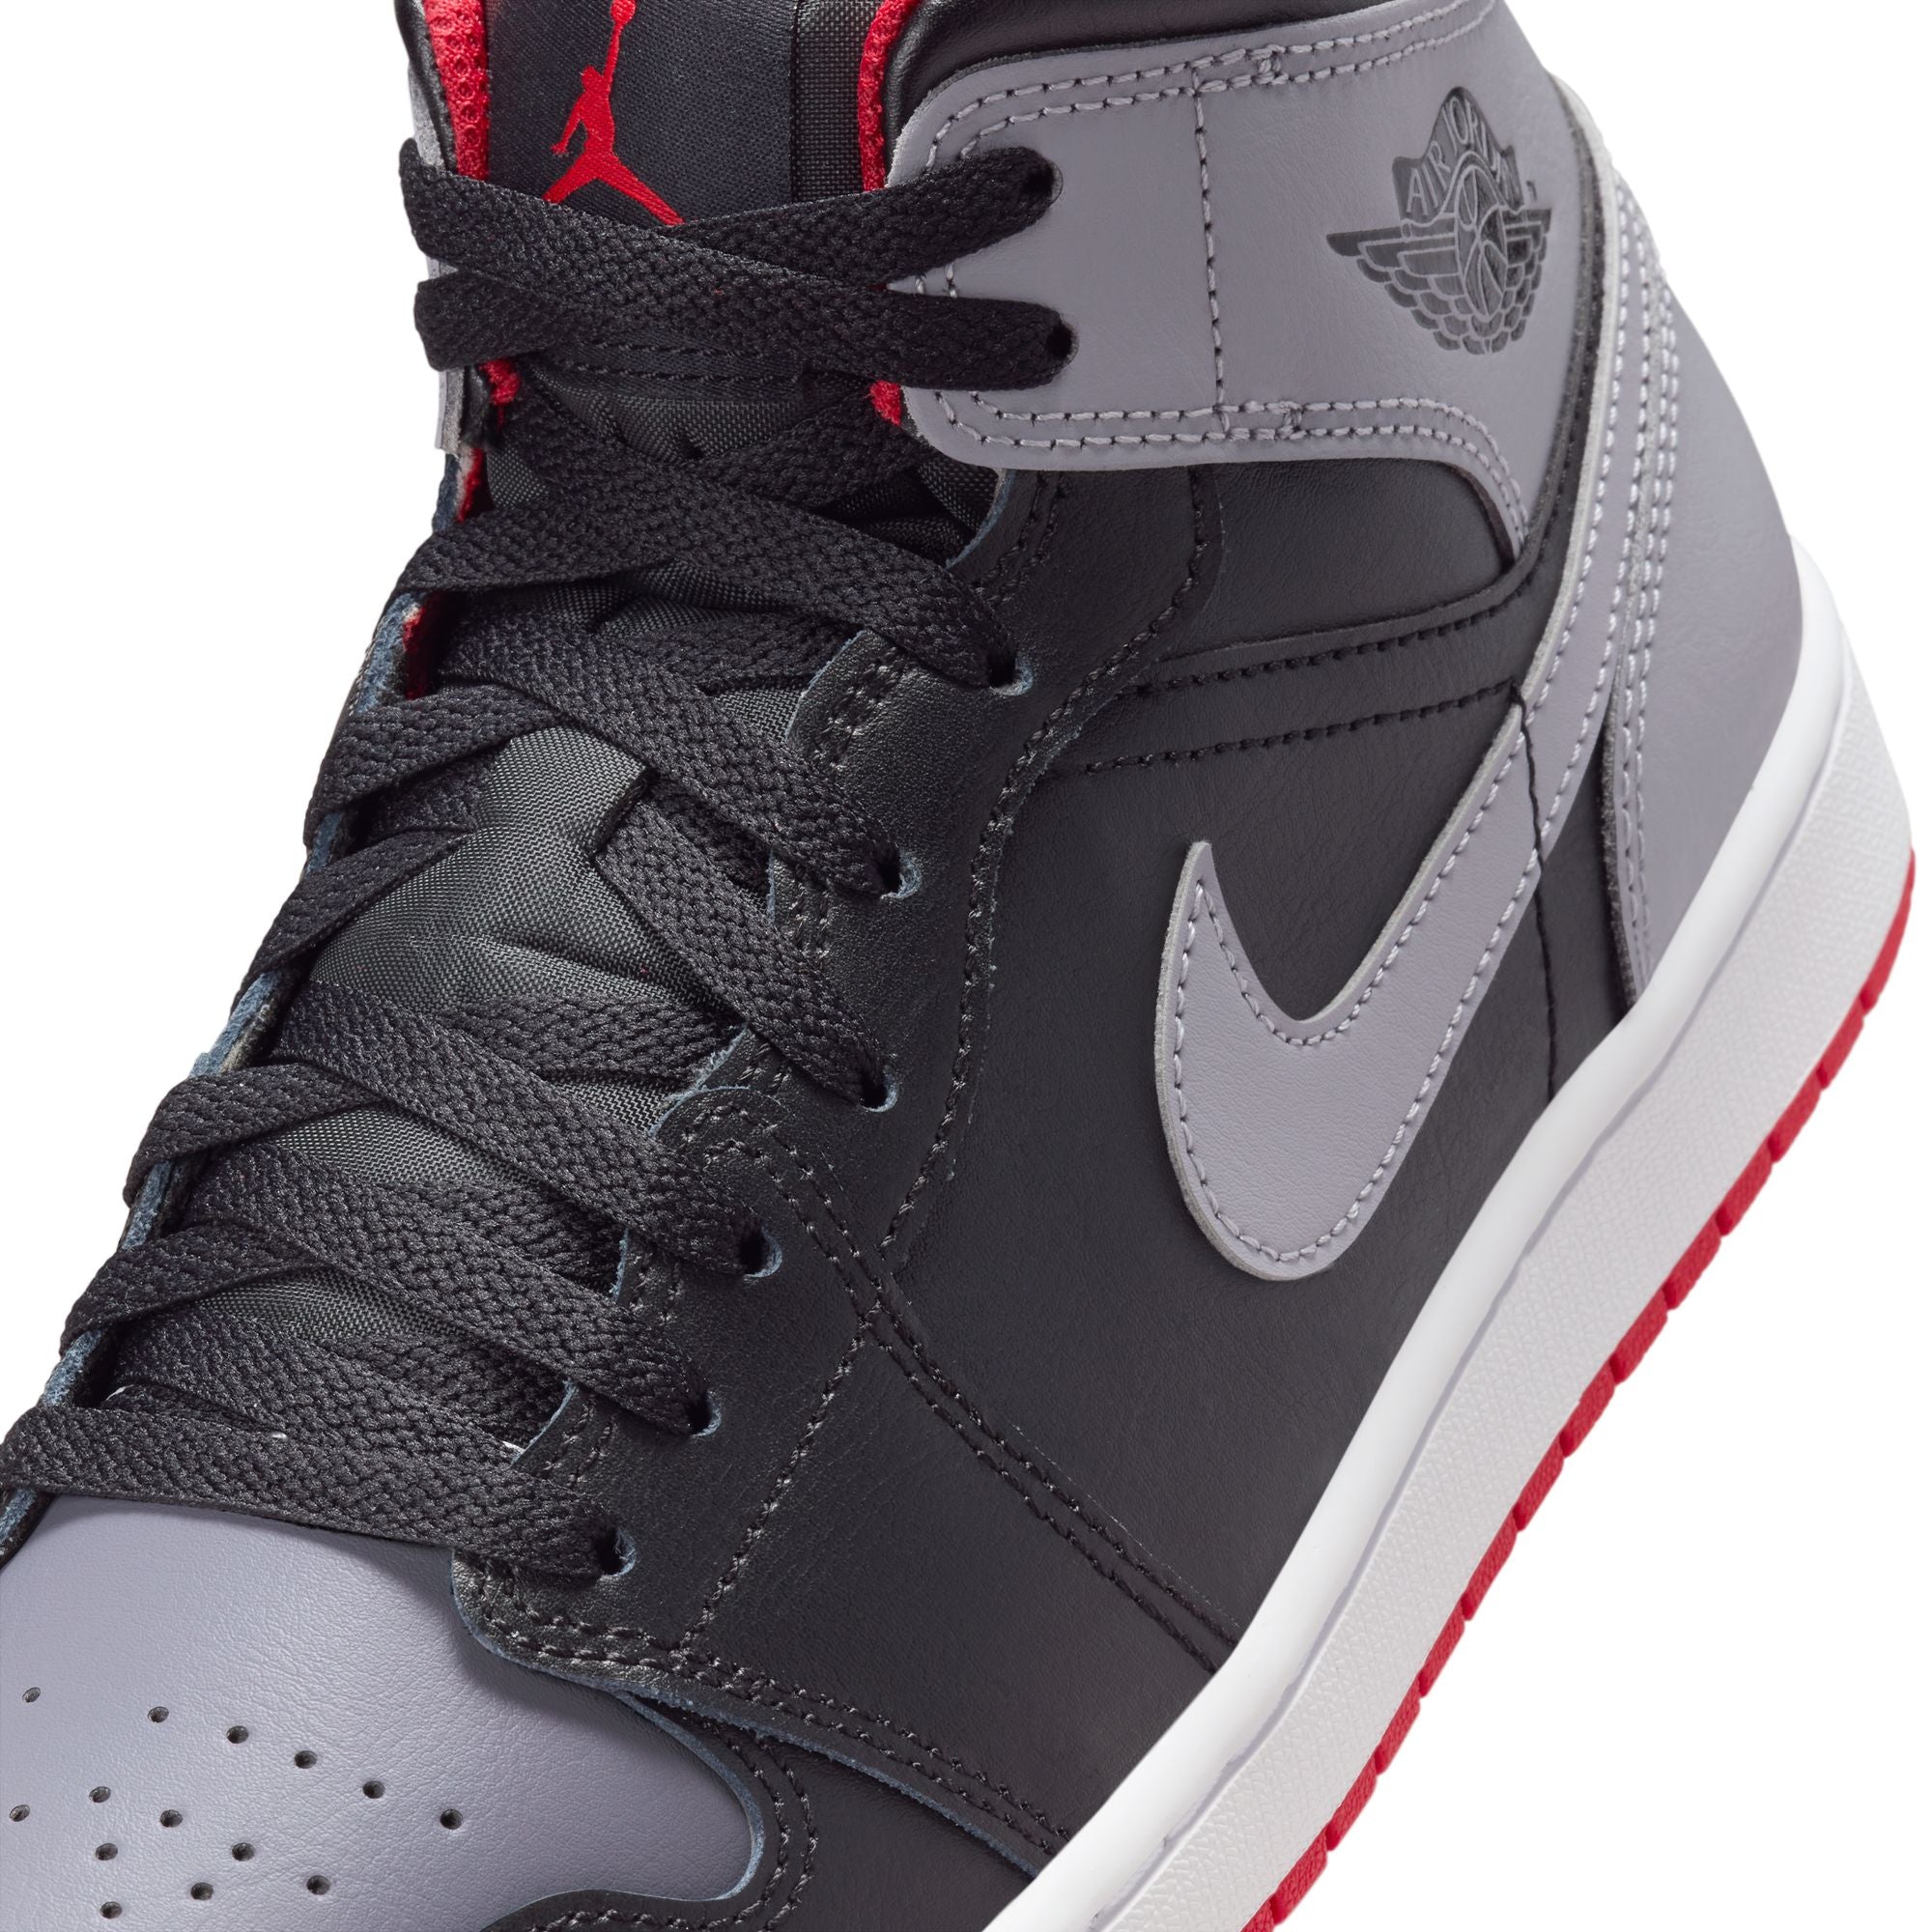 新作Nike Air Jordan1 Mid Black/Cement Grey即日発送可能です